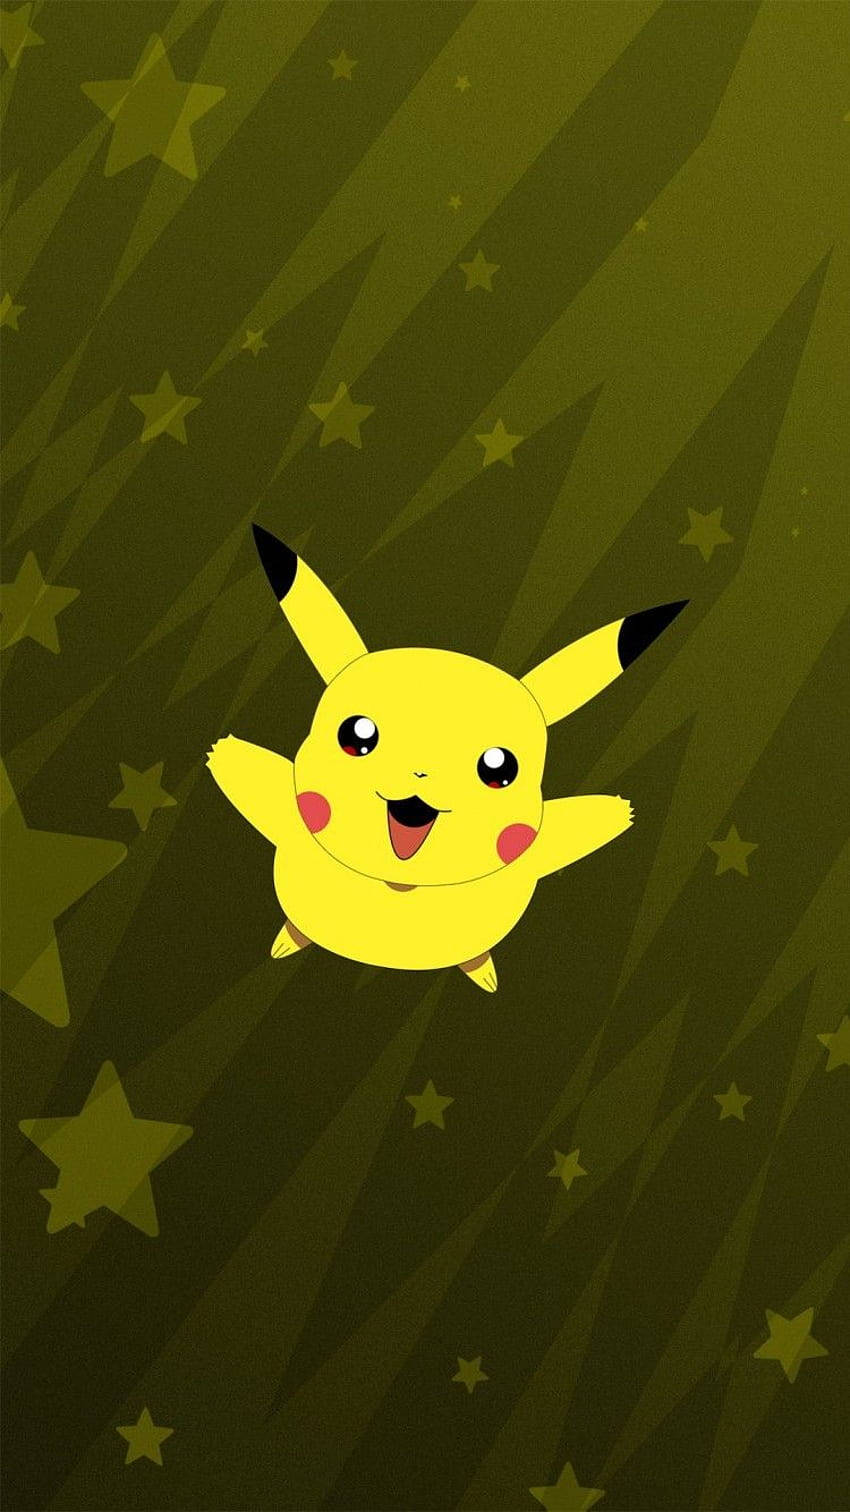 Starry Pikachu iPhone Wallpaper